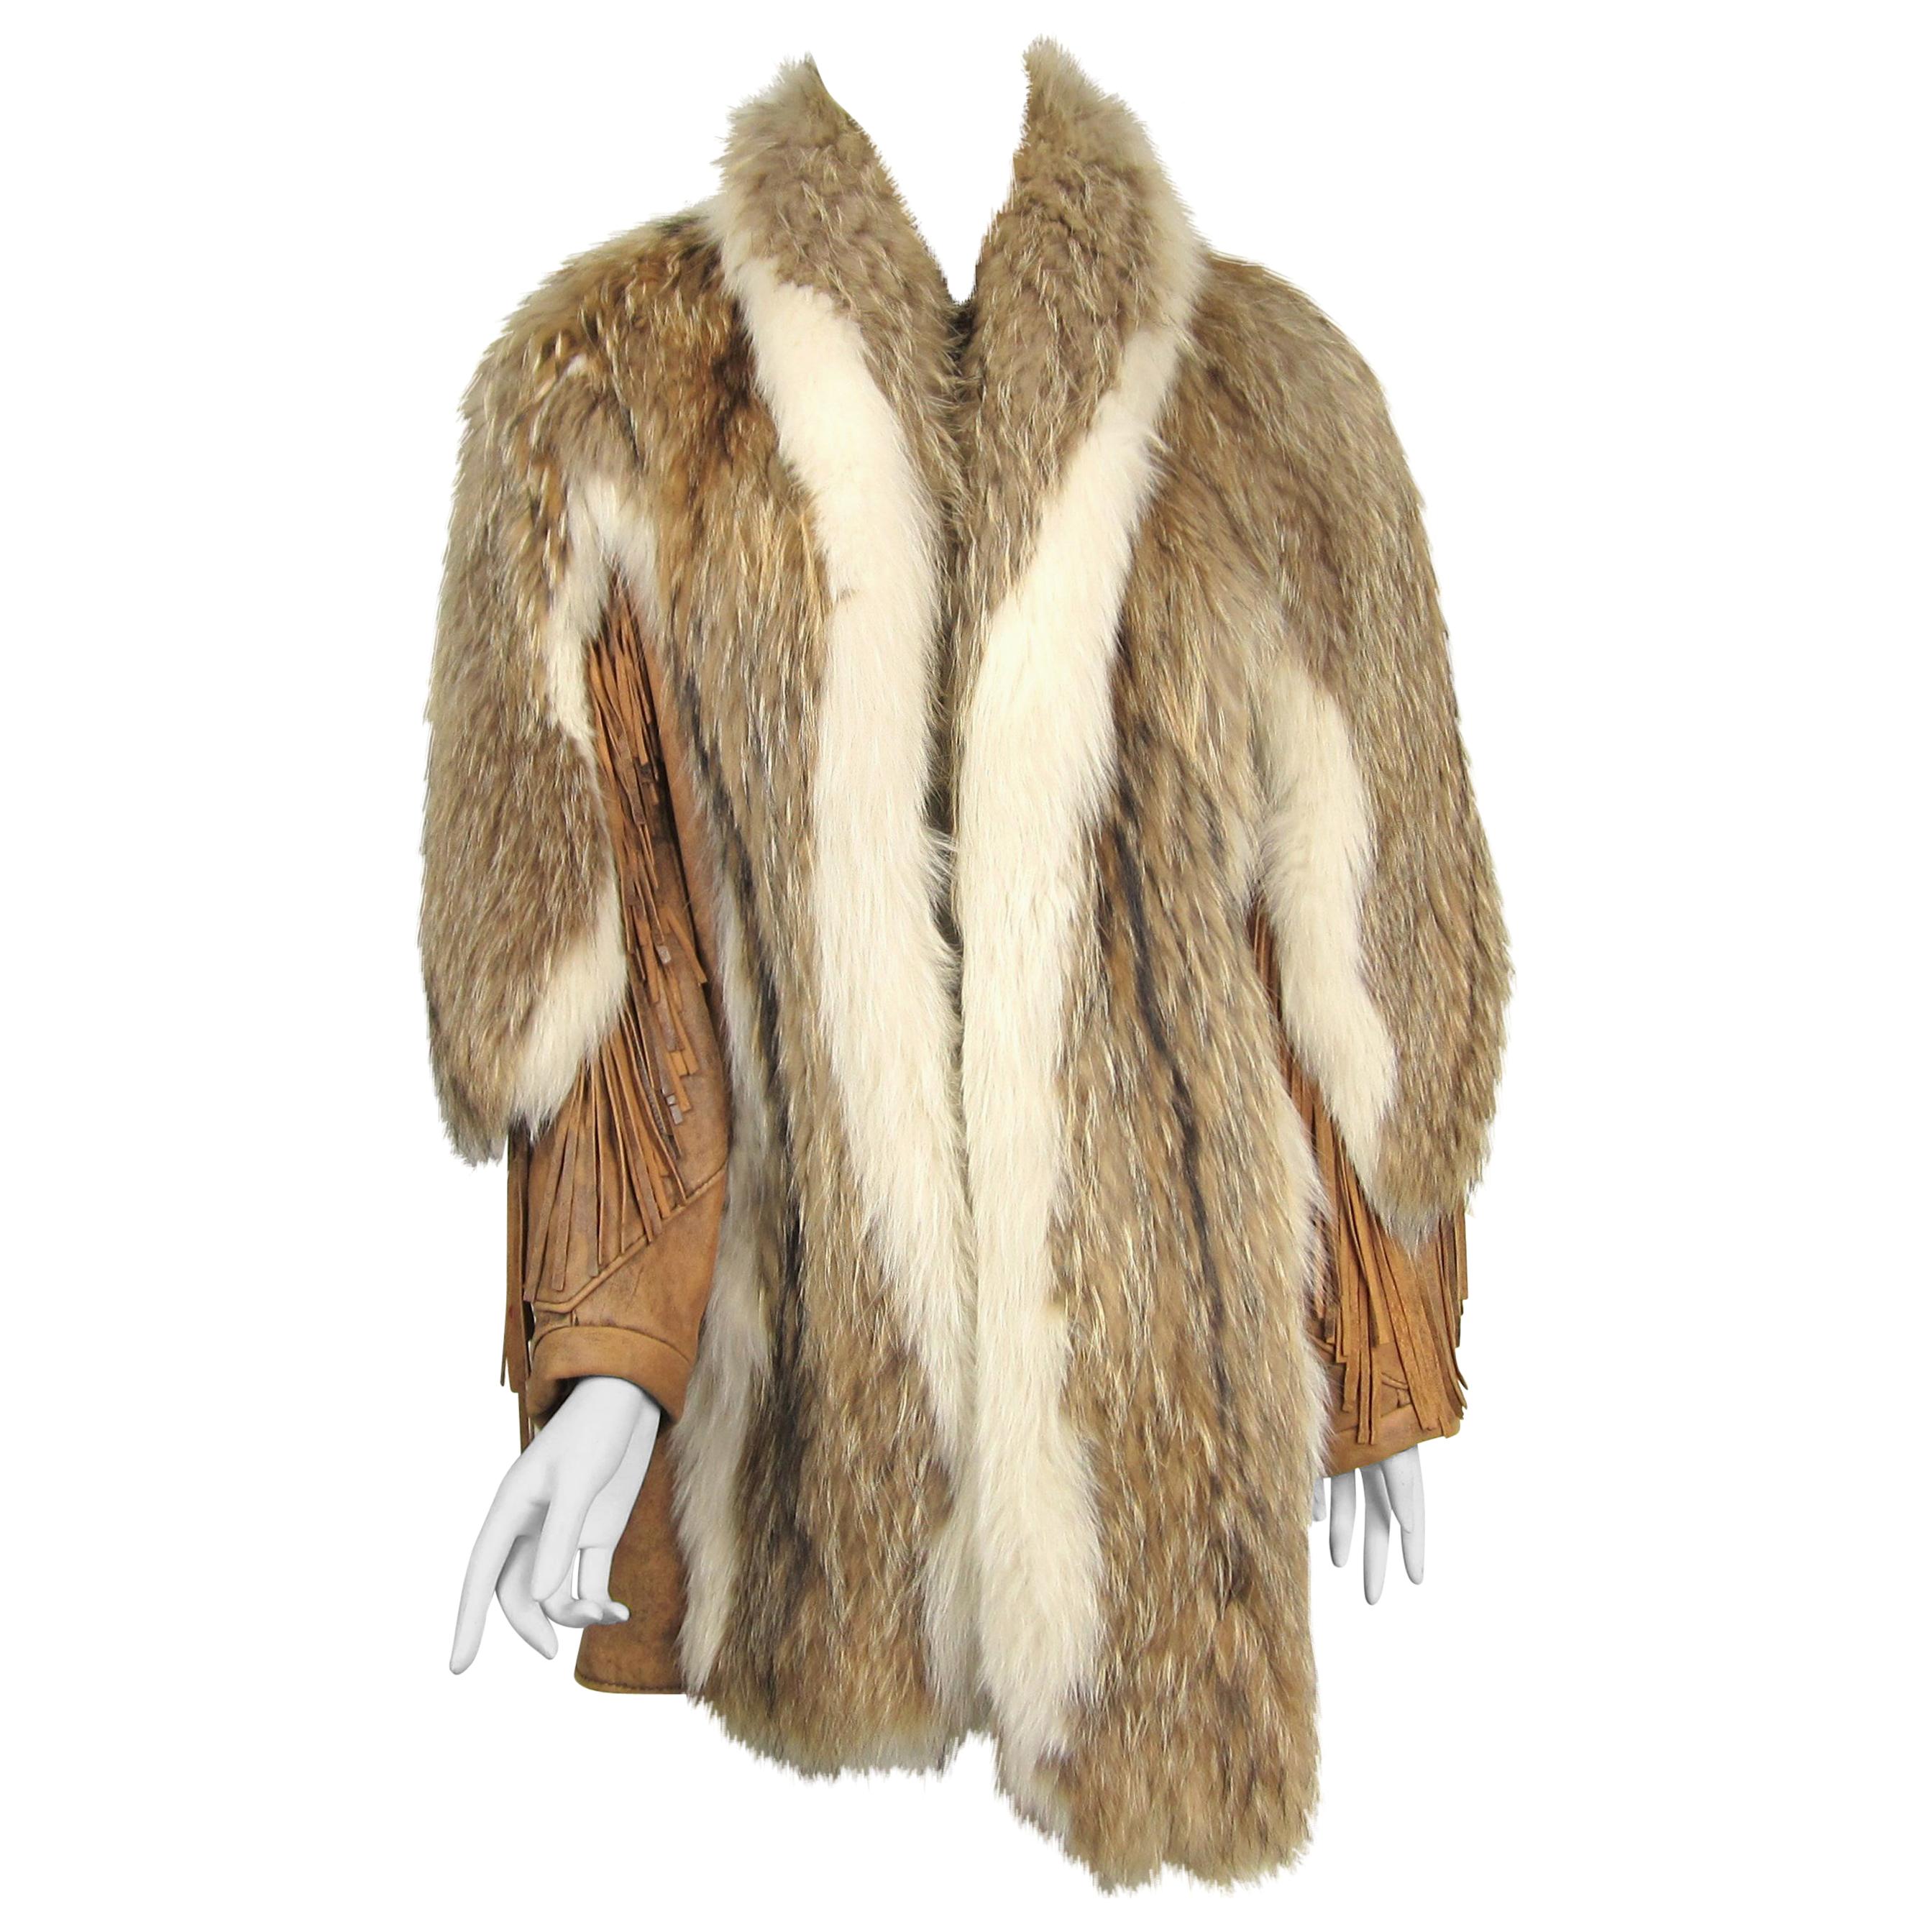  Coyote Fur Leather Fringe Coat Jacket 1990s